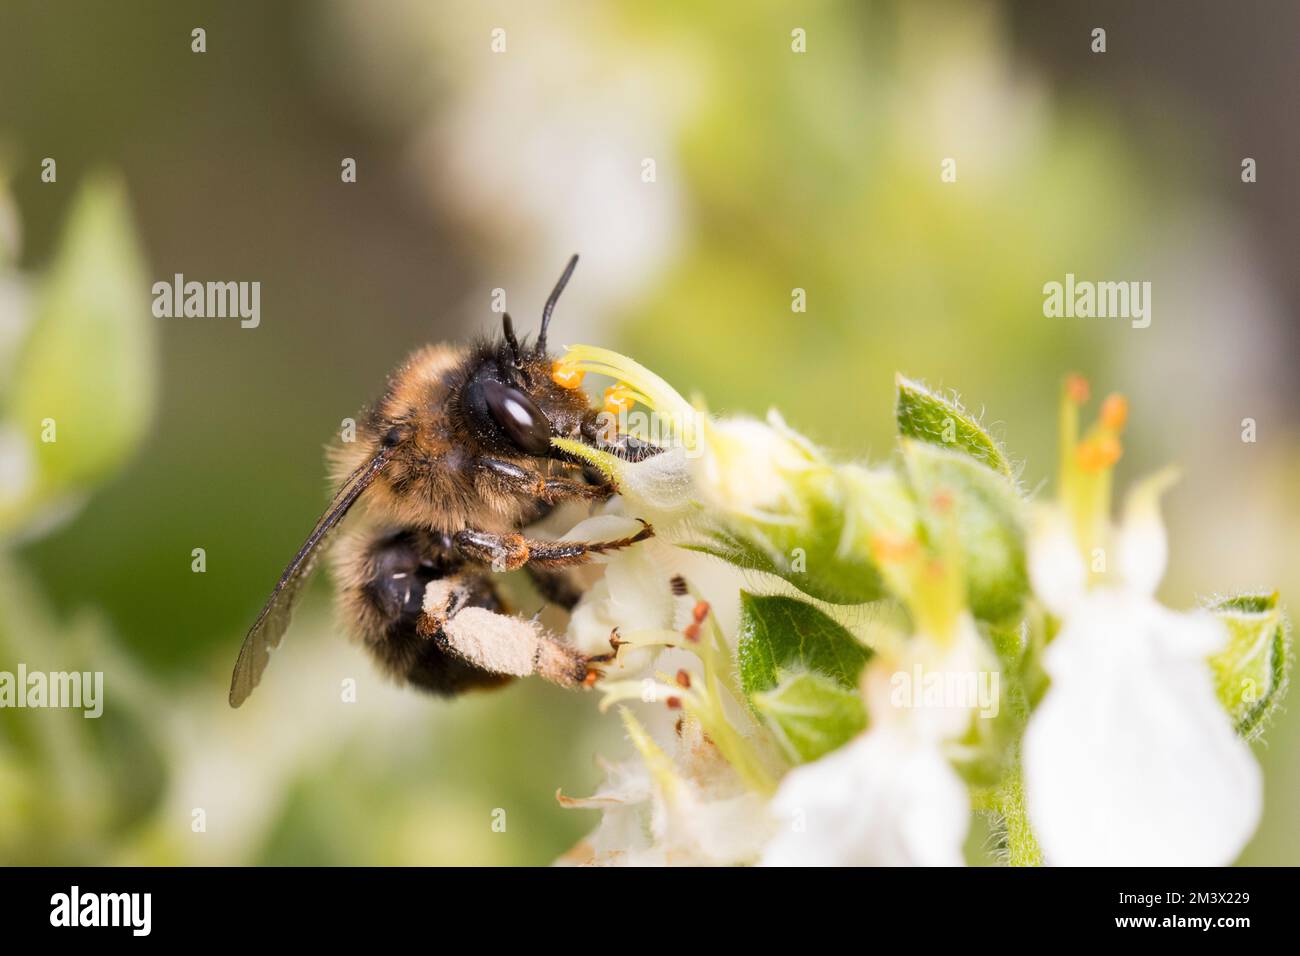 Abeille fleur à queue plate (Anthrophora furcata) femelle collectant le nectar et le pollen des fleurs de Teucrium dans un jardin. Powys, pays de Galles. Juillet. Banque D'Images